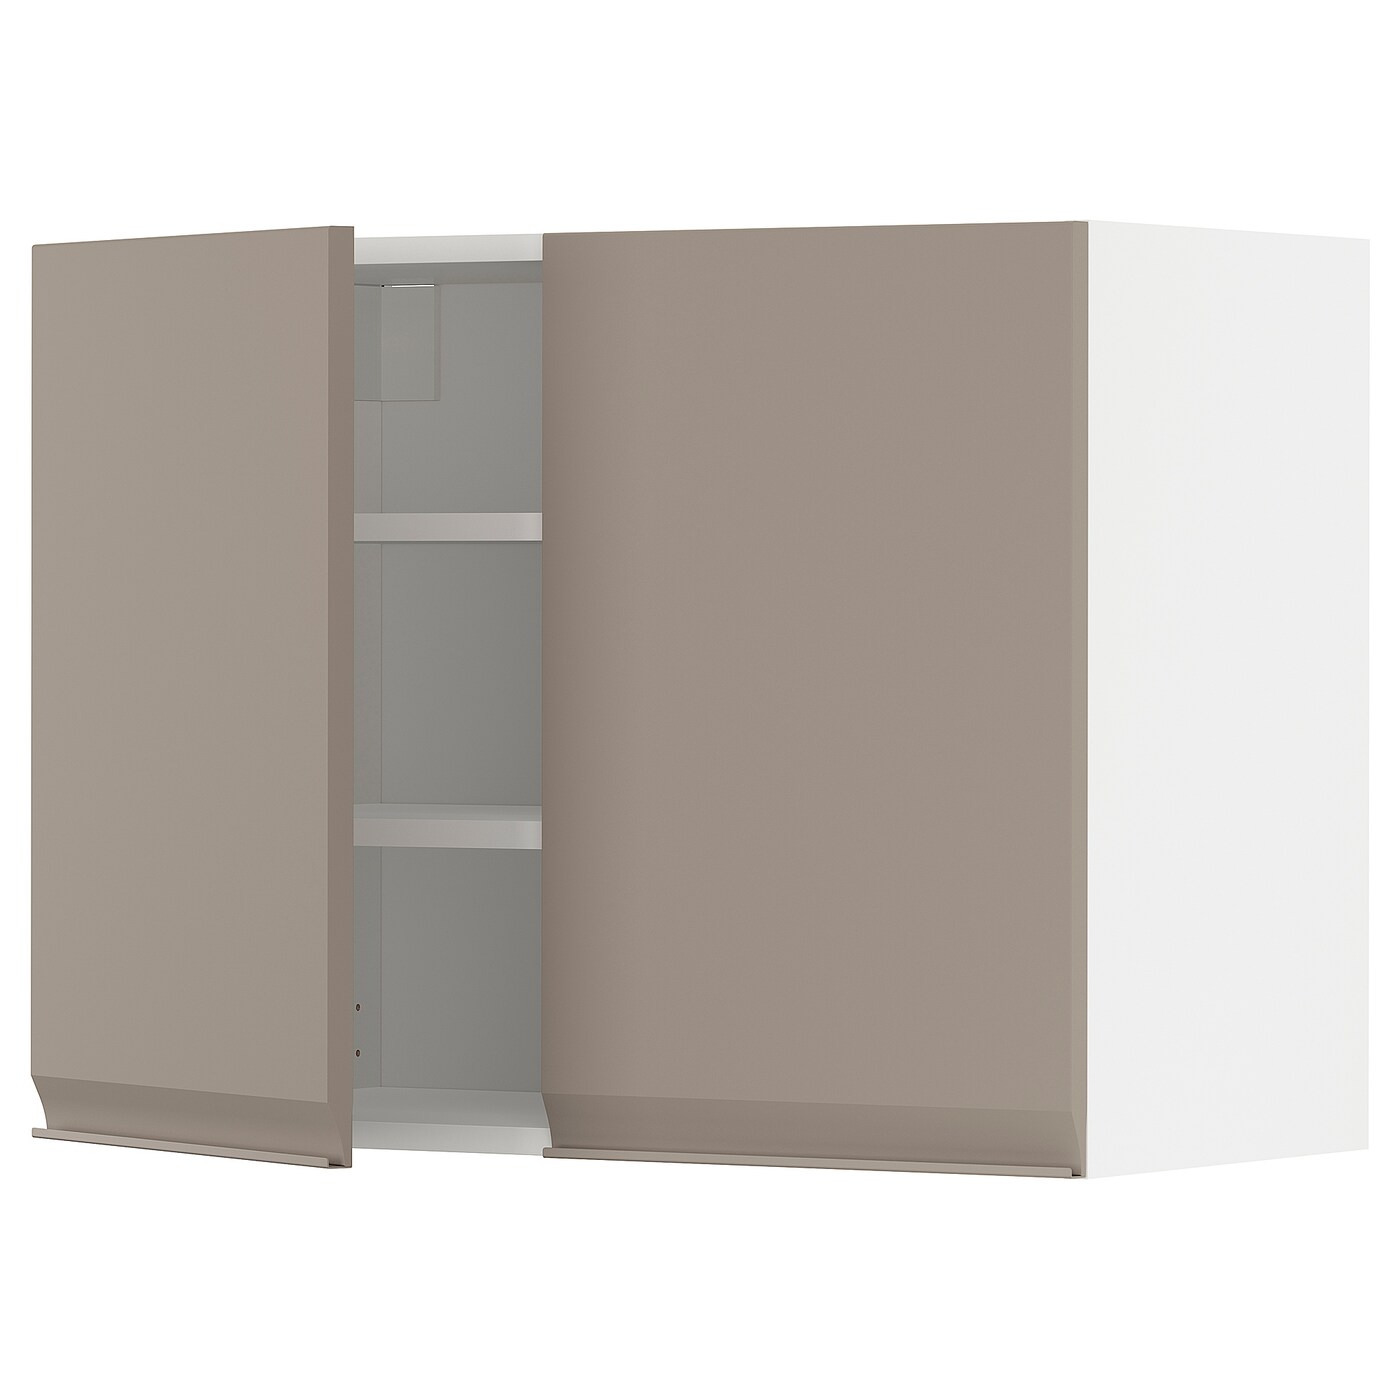 Навесной шкаф с полкой - METOD IKEA/ МЕТОД ИКЕА, 60х80 см, белый/светло-коричневый